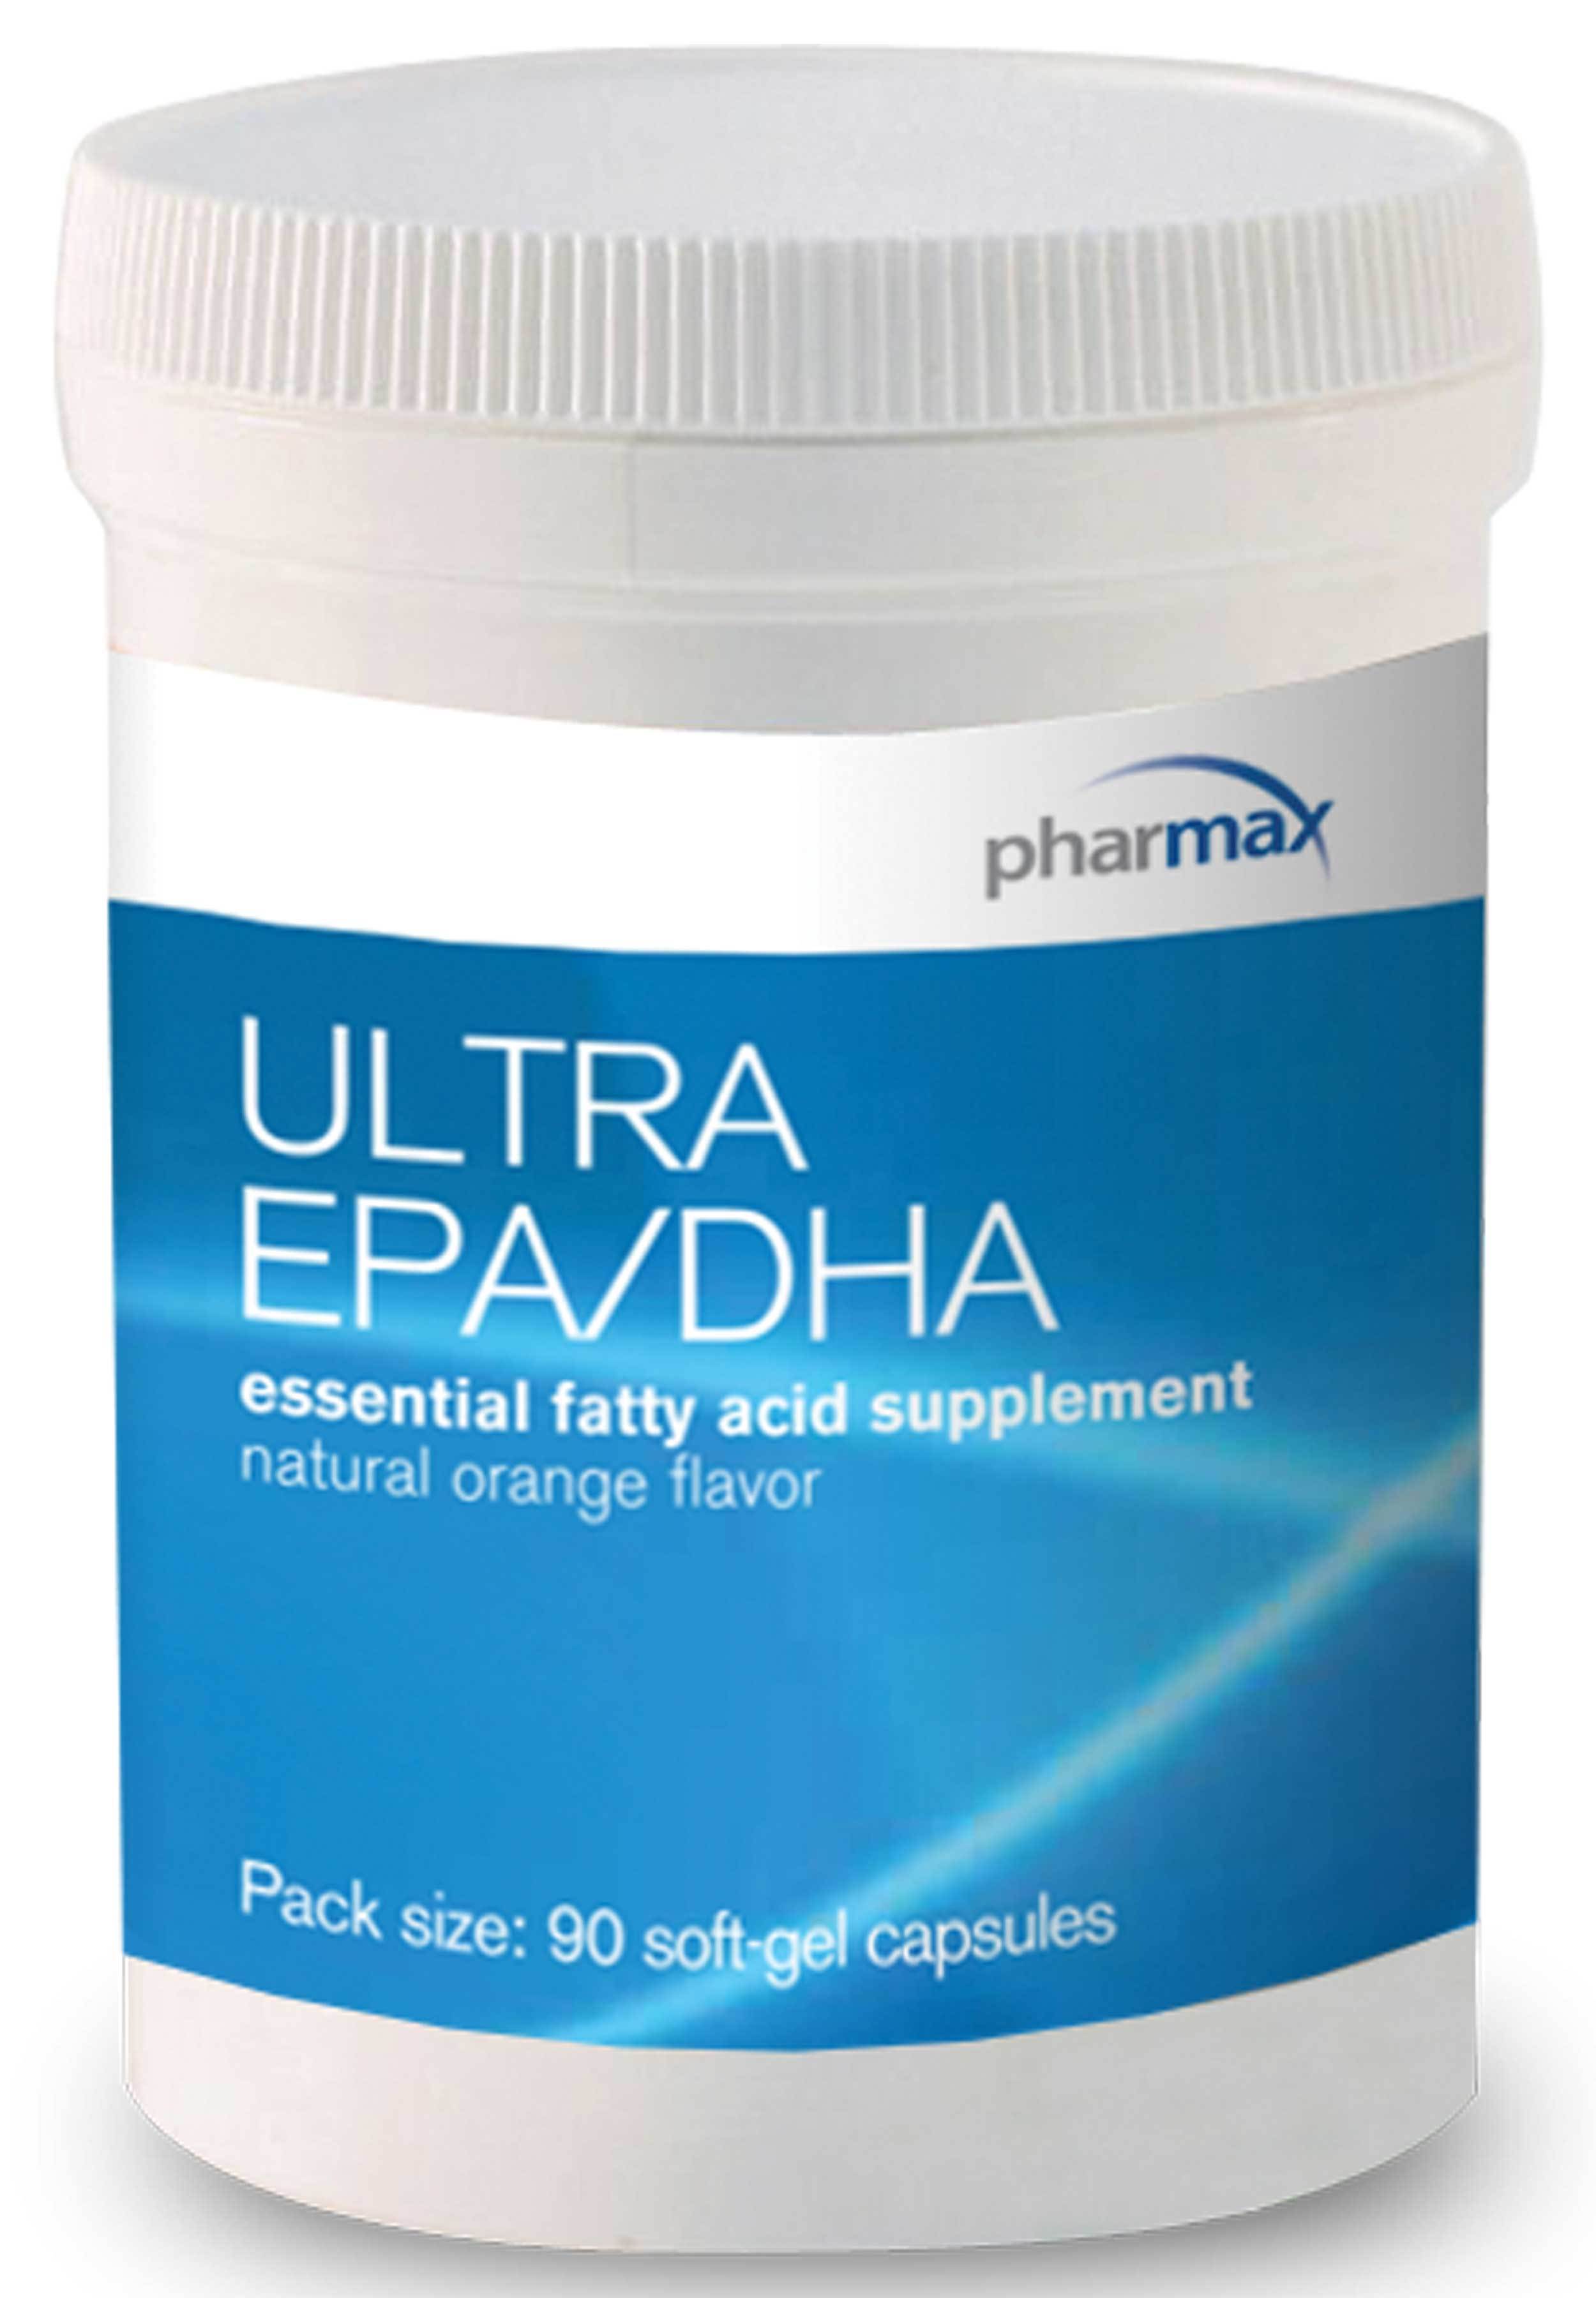 Pharmax Ultra EPA/DHA